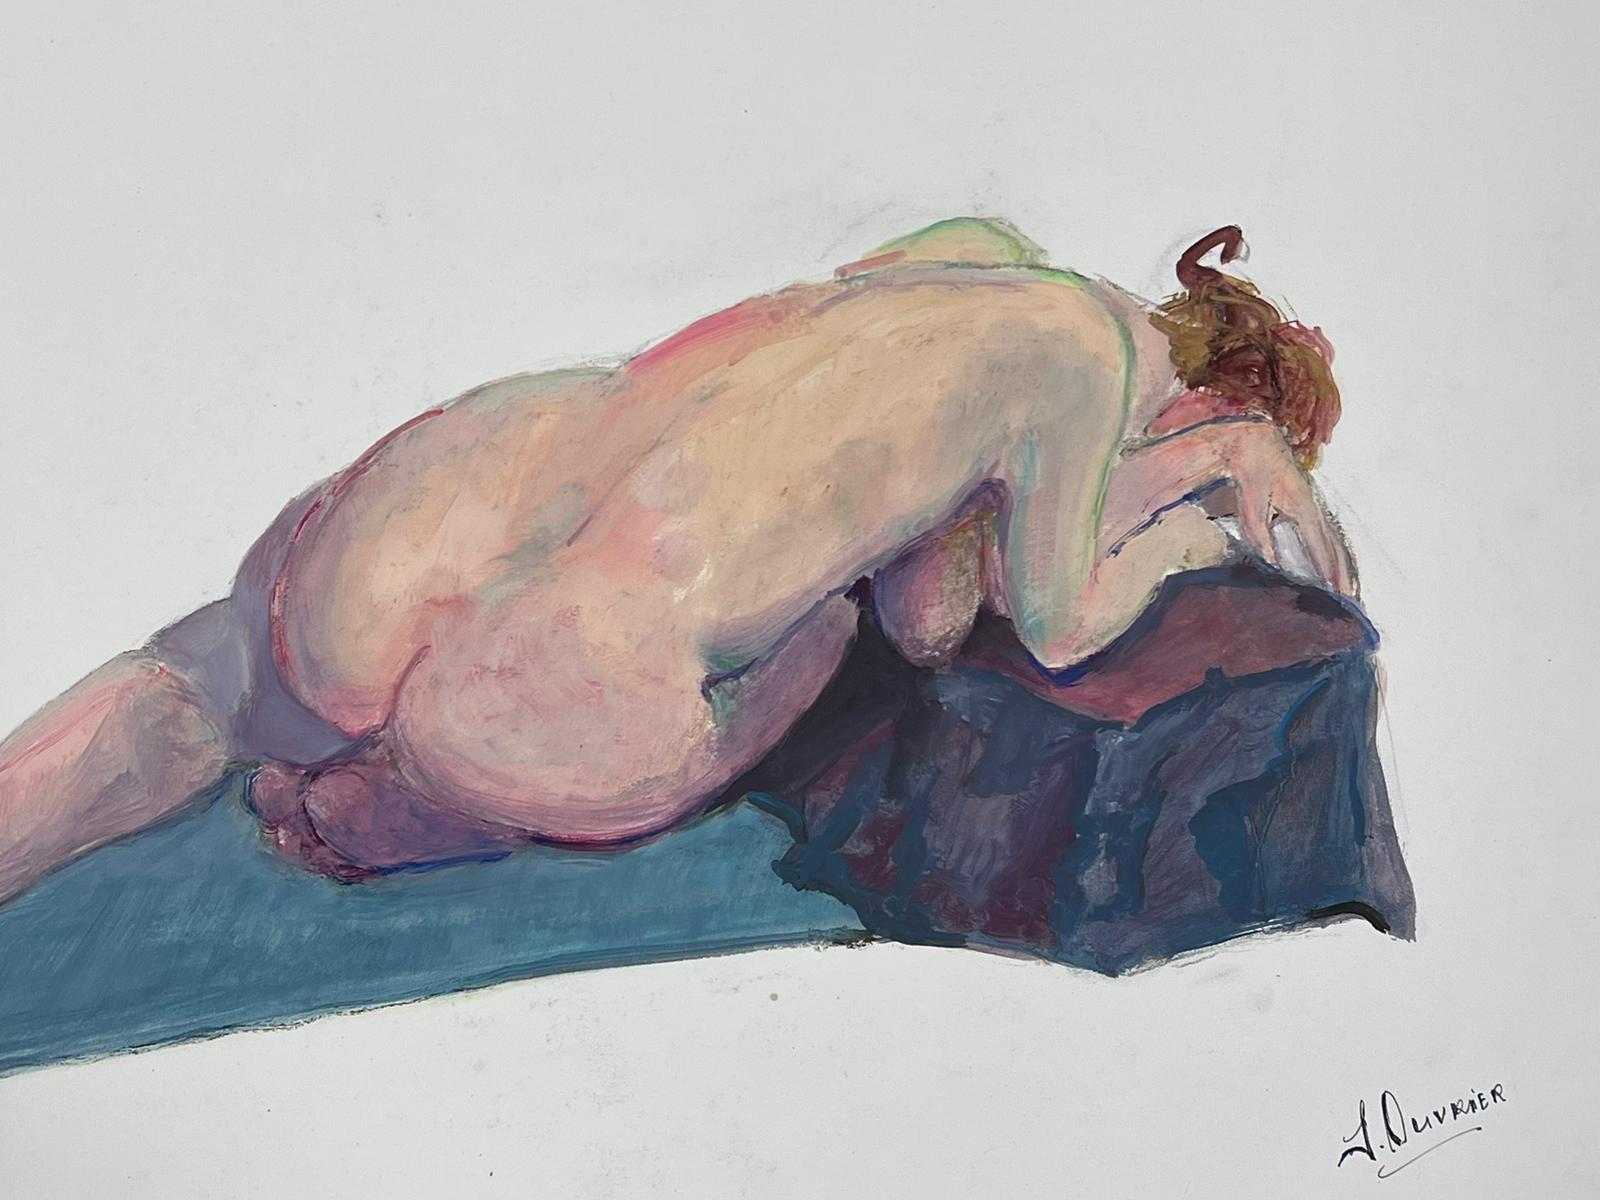 Tableau moderniste français d'une femme nue allongée des années 1970 Collection Provence - Painting de French Modernist